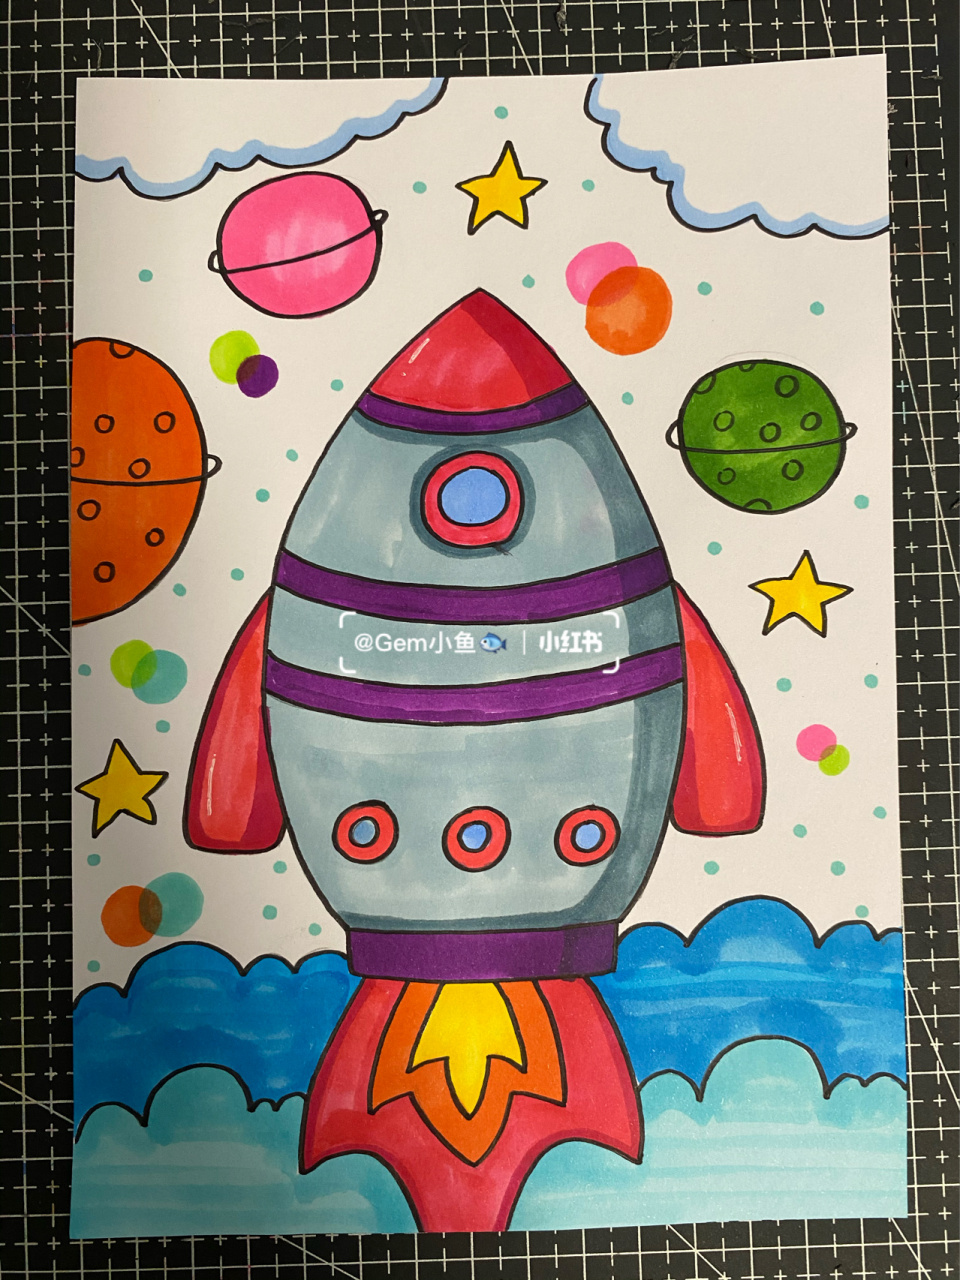 火箭创意画 火箭发射儿童画 适合幼儿园小朋友 马克笔:多乐绘nice